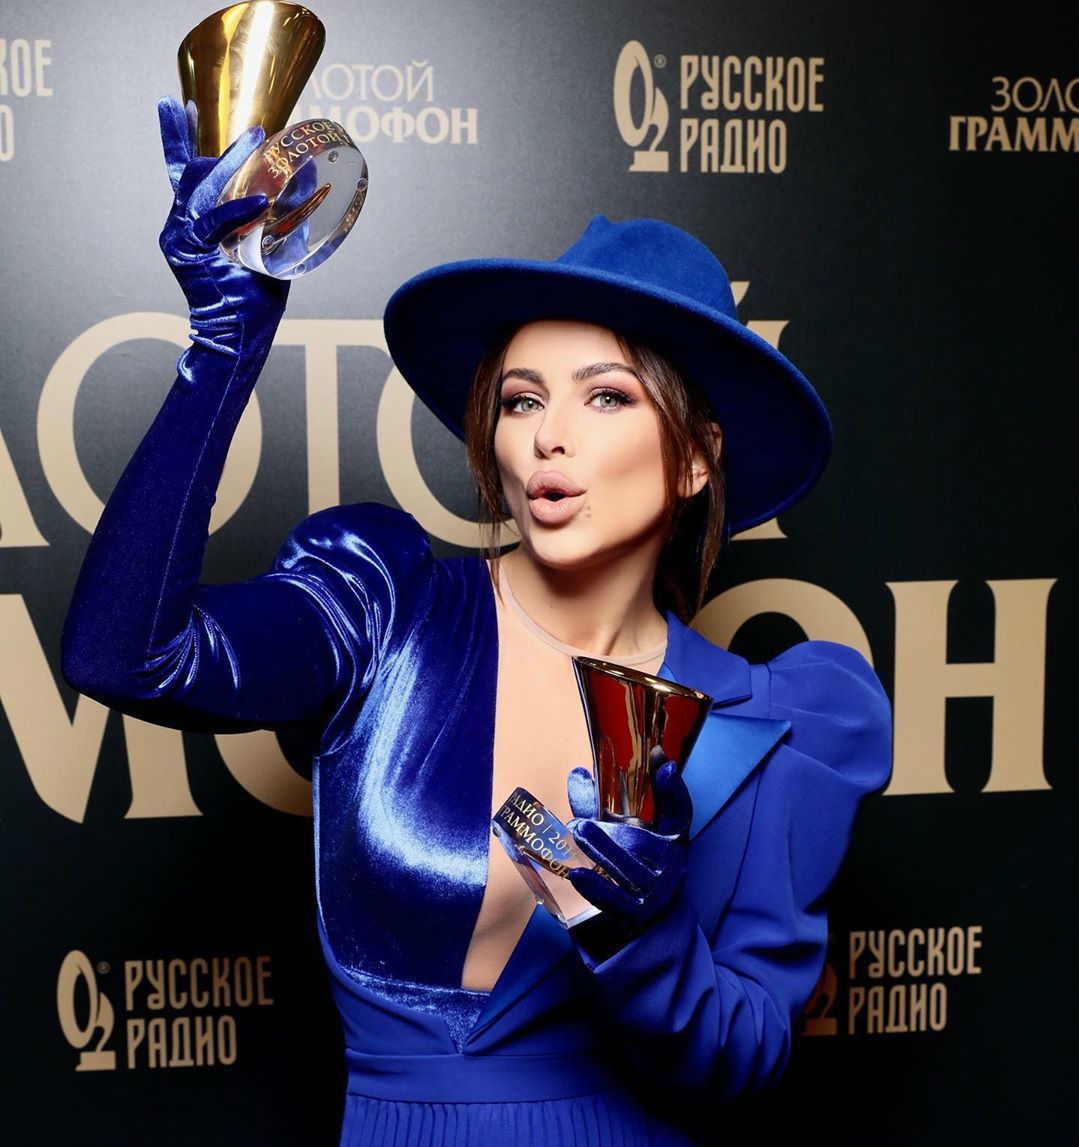 Ані Лорак засвітилася на російської премії. Співачка отримала дві статуетки "Золотого грамофона".